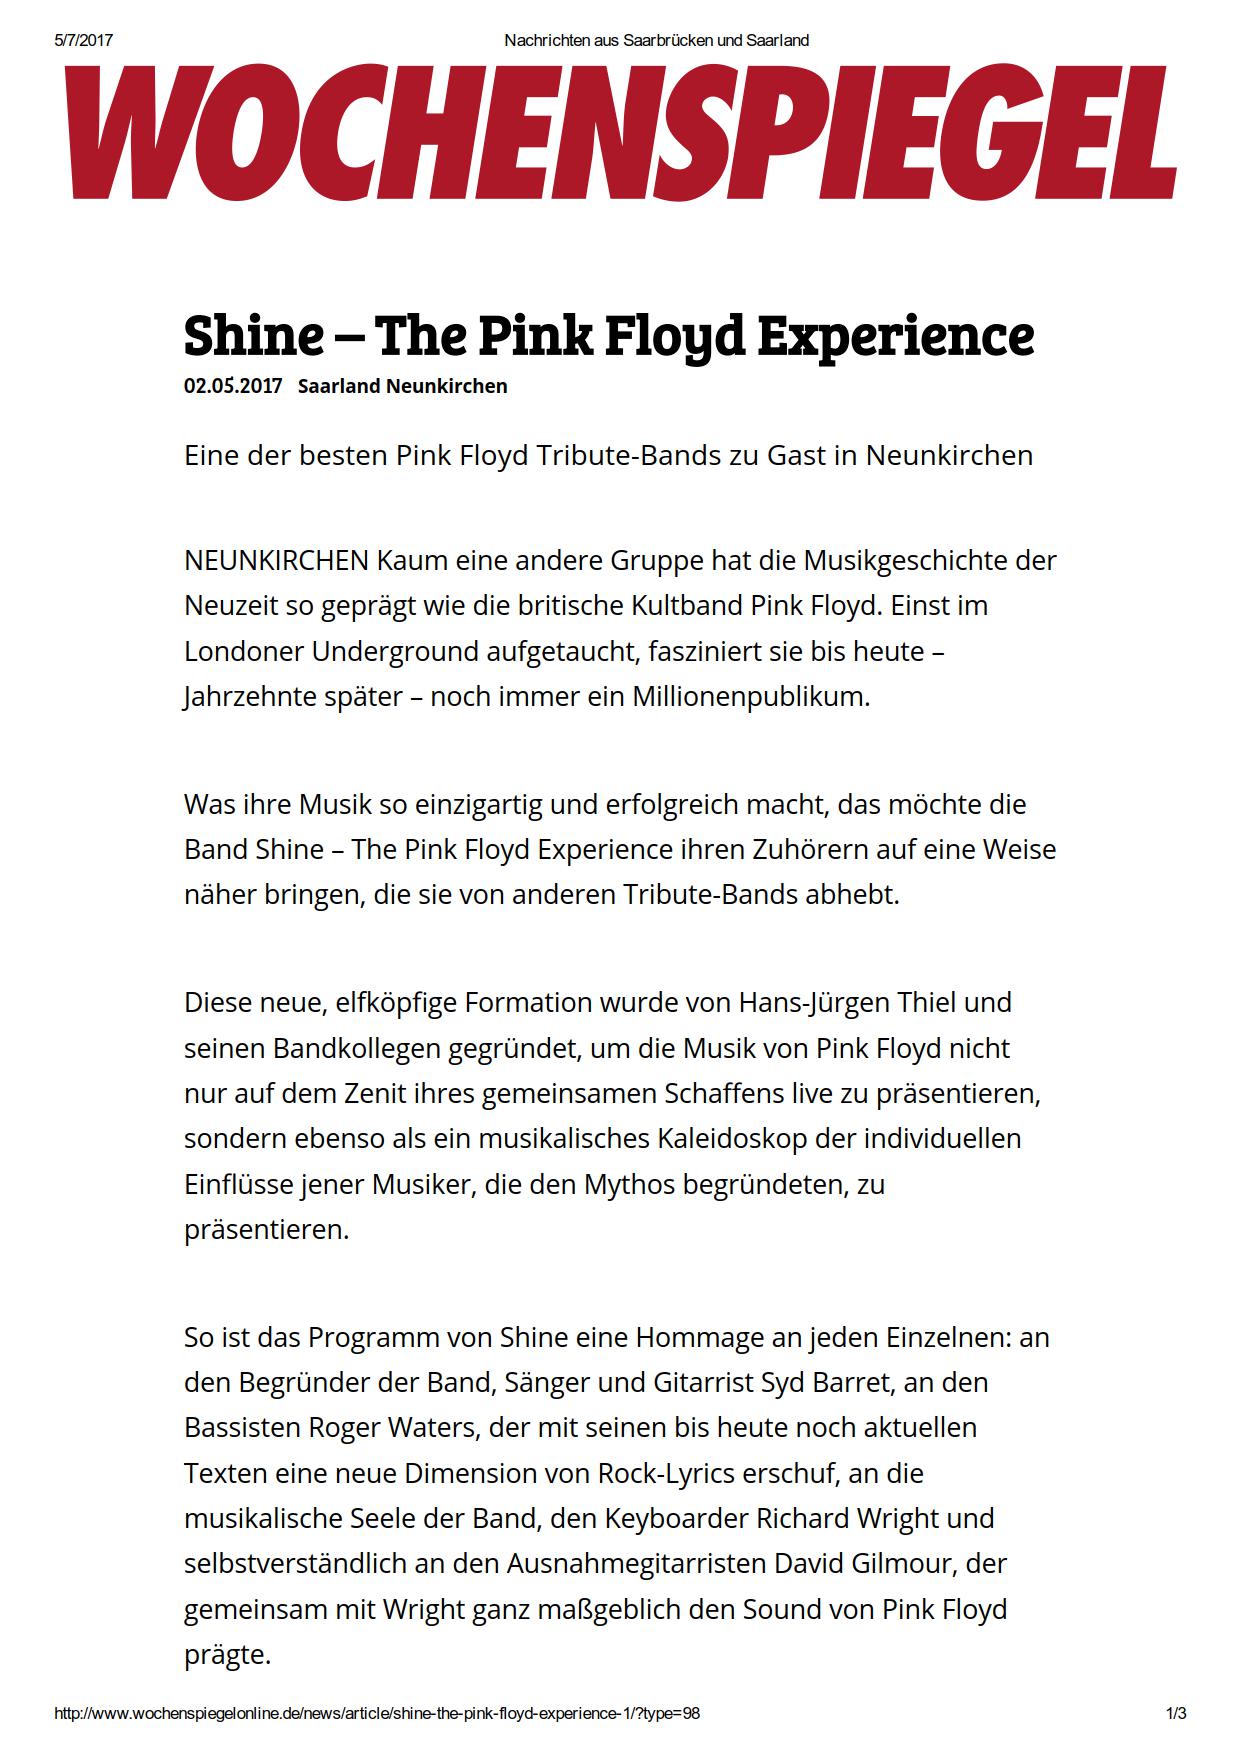 Shine – The Pink Floyd Experience_ Eine der besten Pink Floyd Tribute-Bands zu Gast in Neunkirchen_1.png